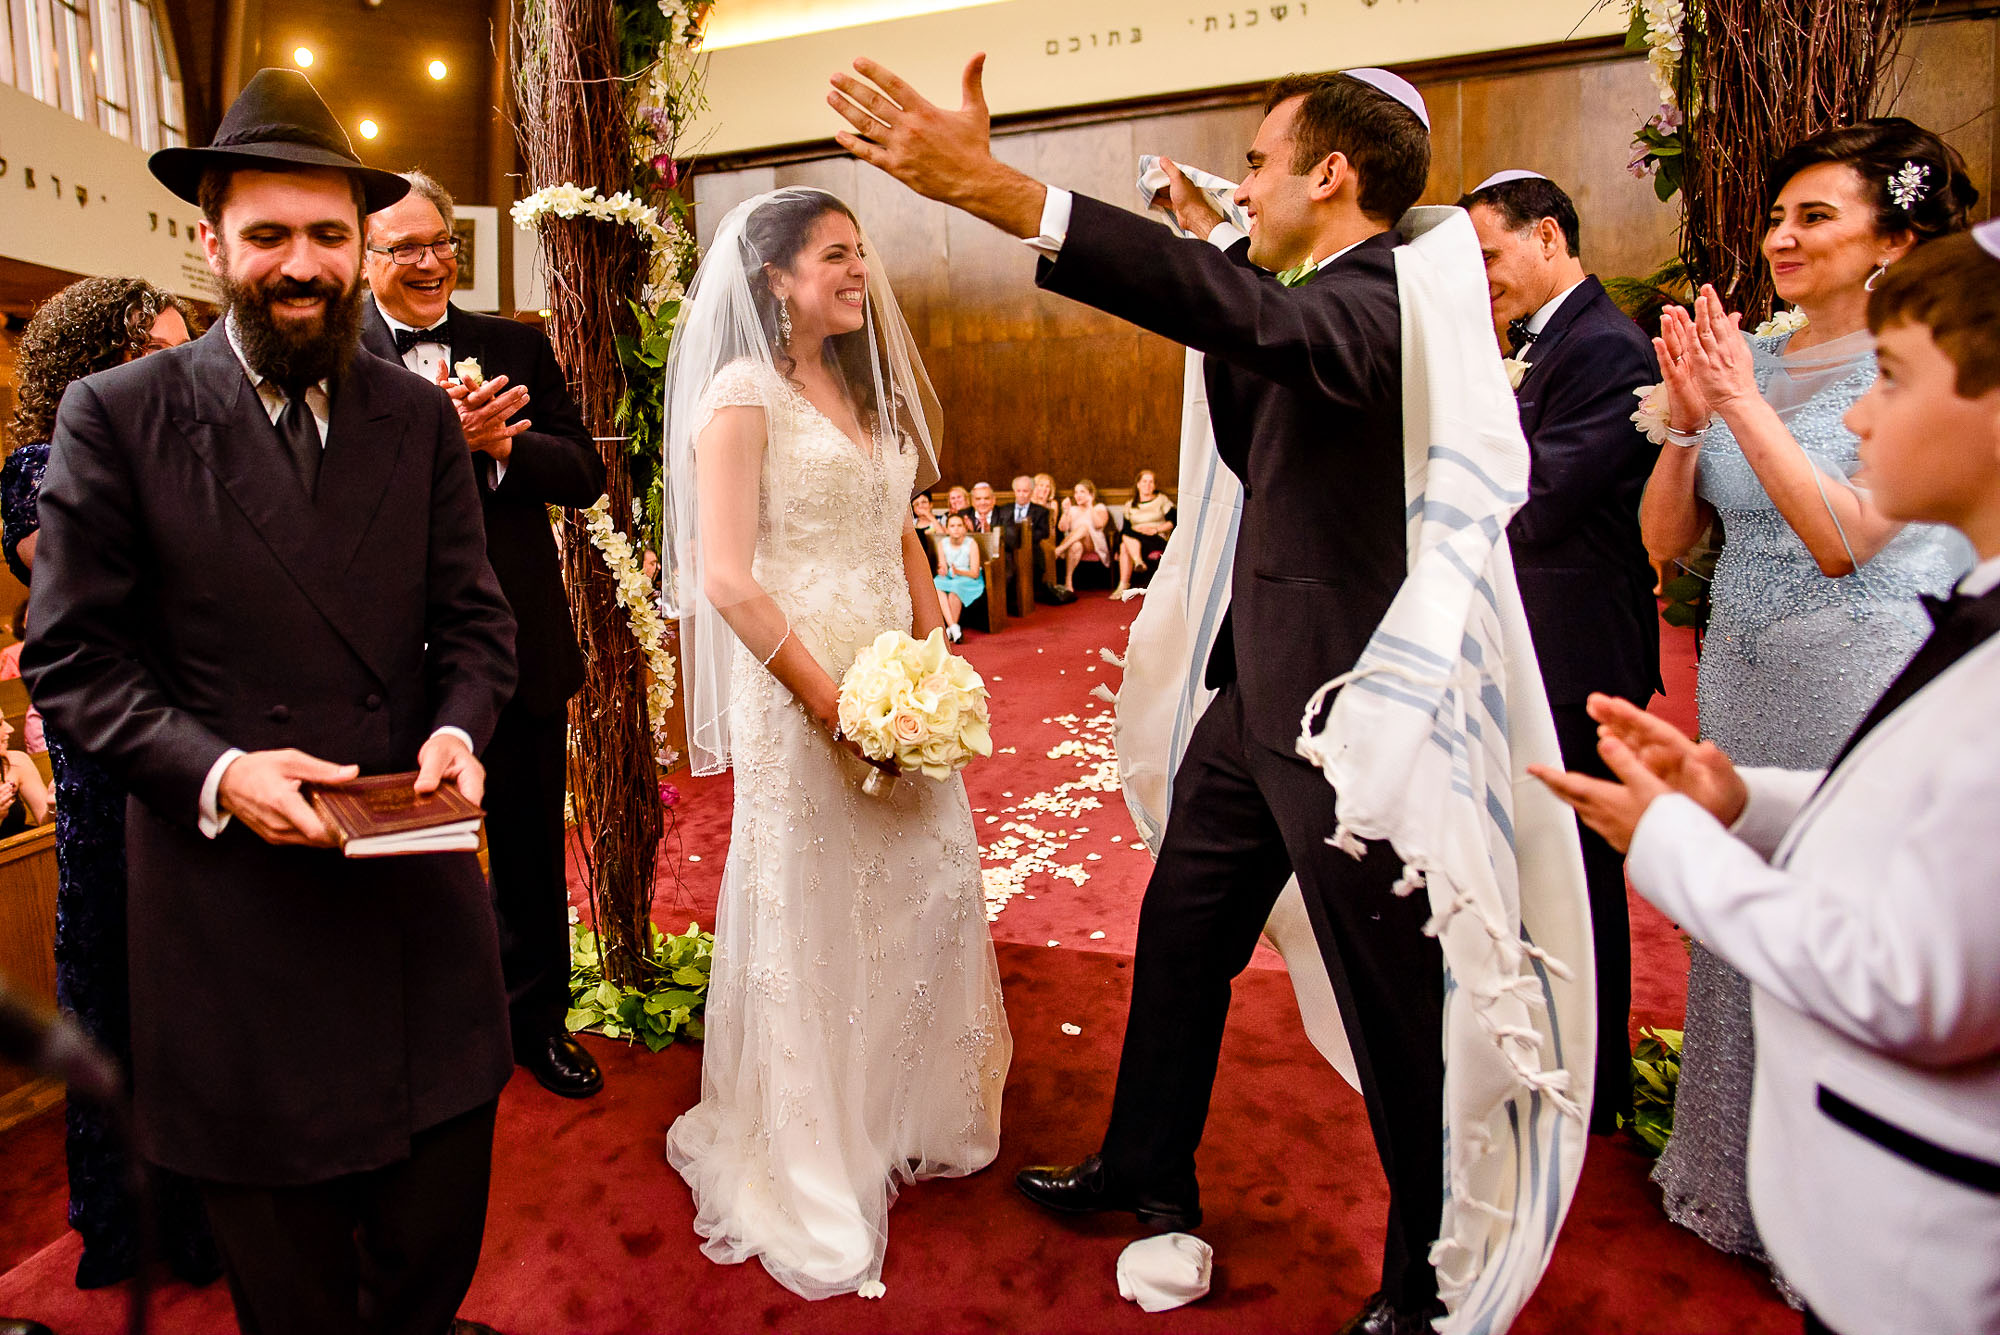 The Sephardic Temple jewish wedding ceremony